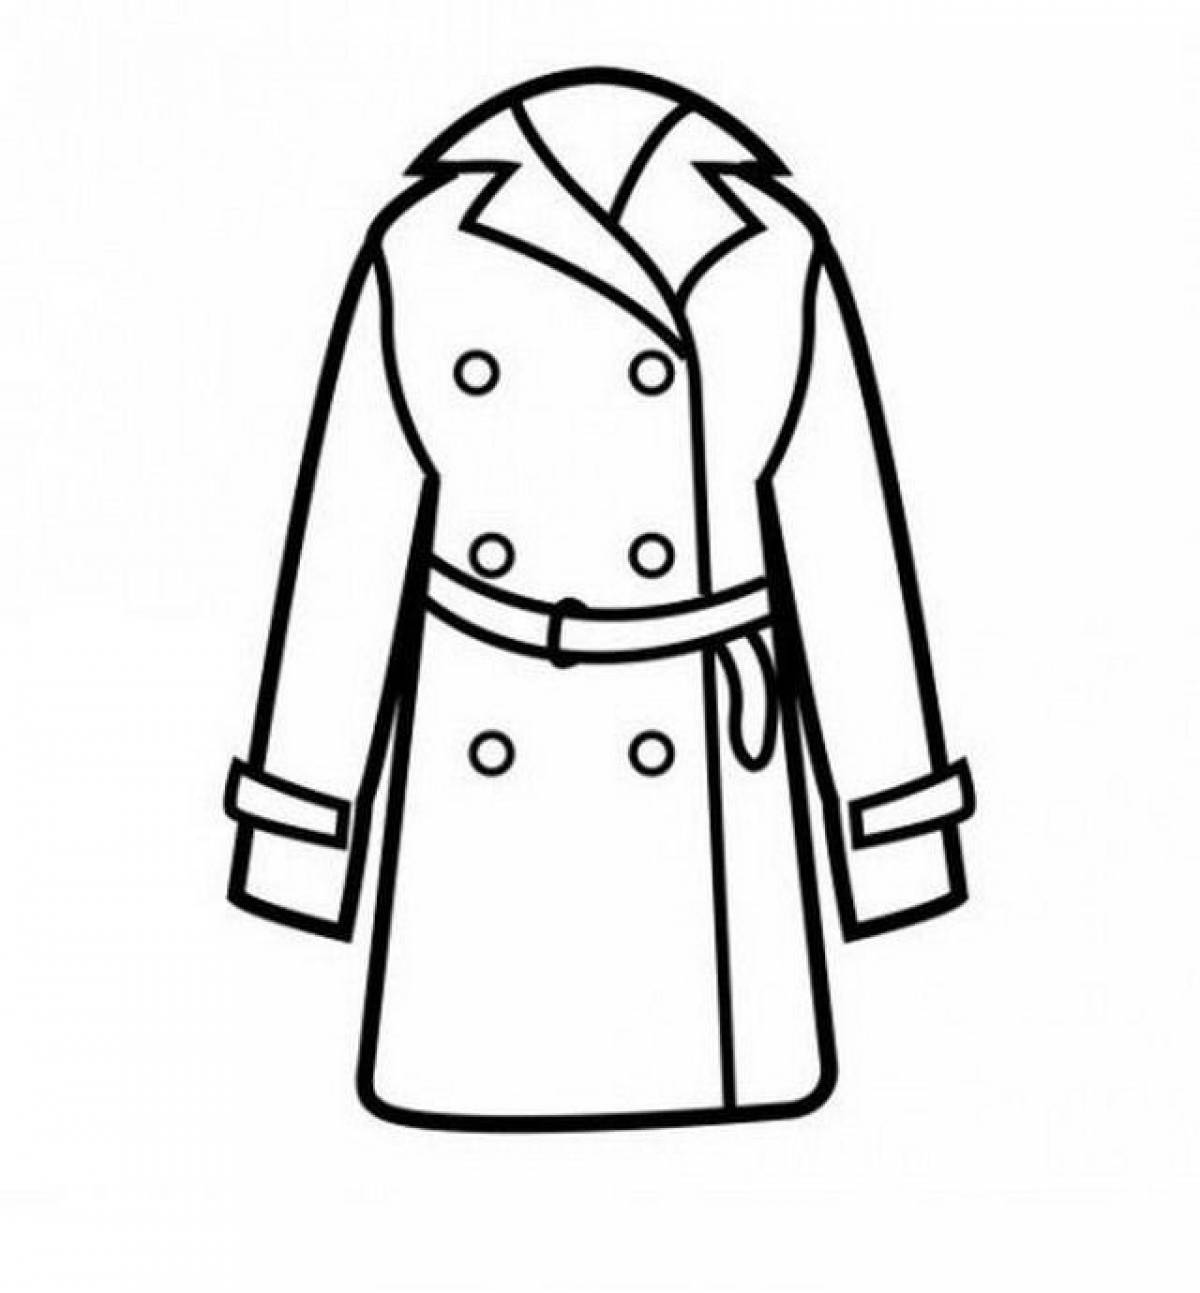 Belted coat